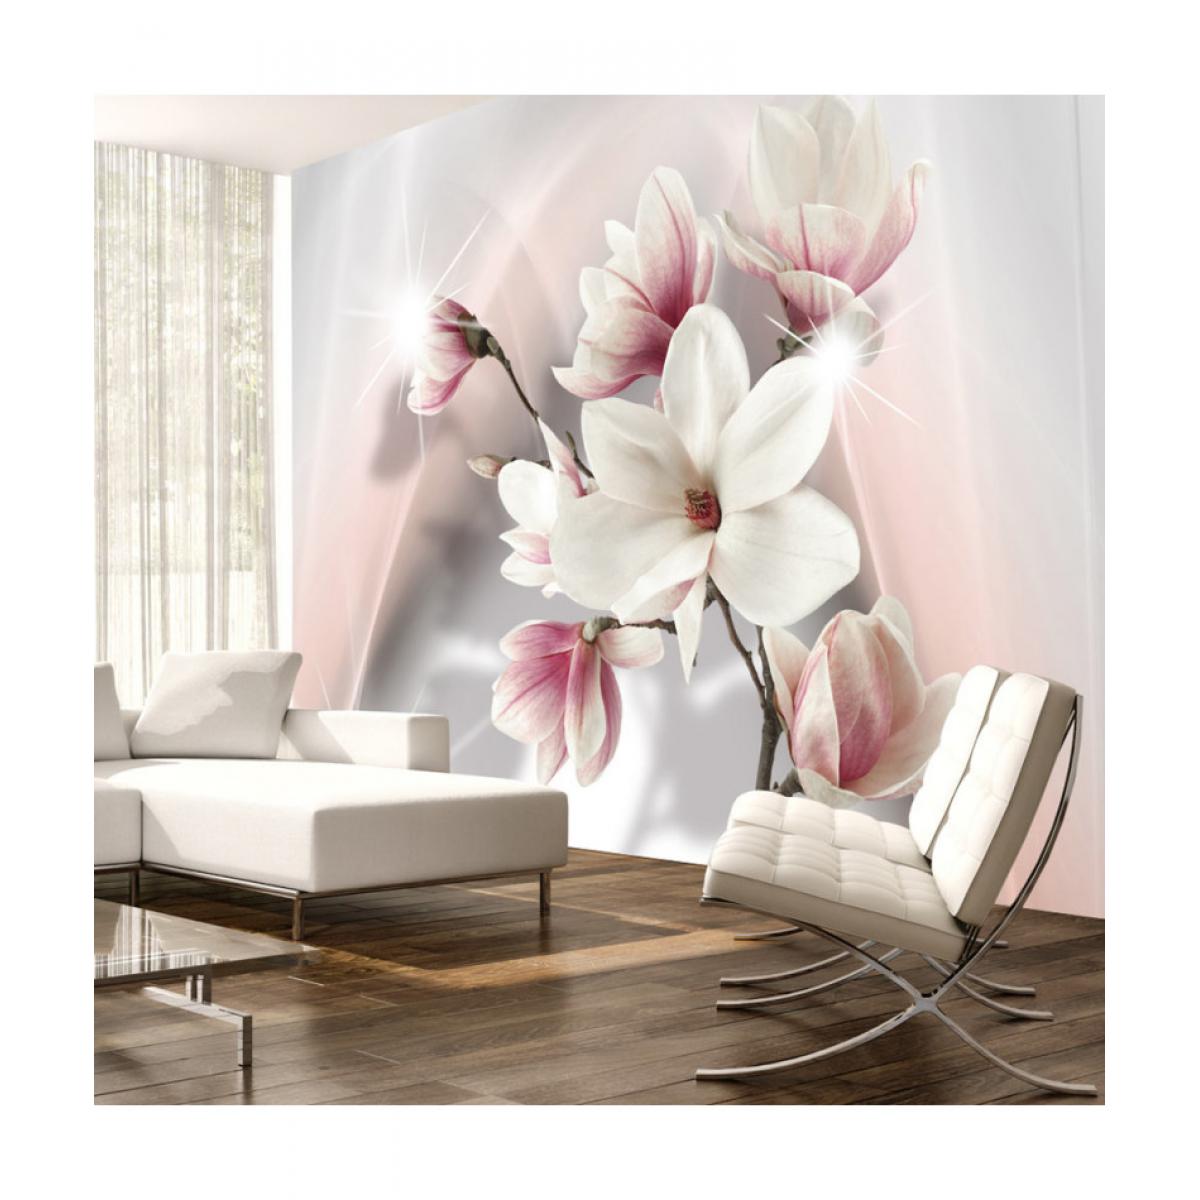 Artgeist - Papier peint - White magnolias 200x140 - Papier peint